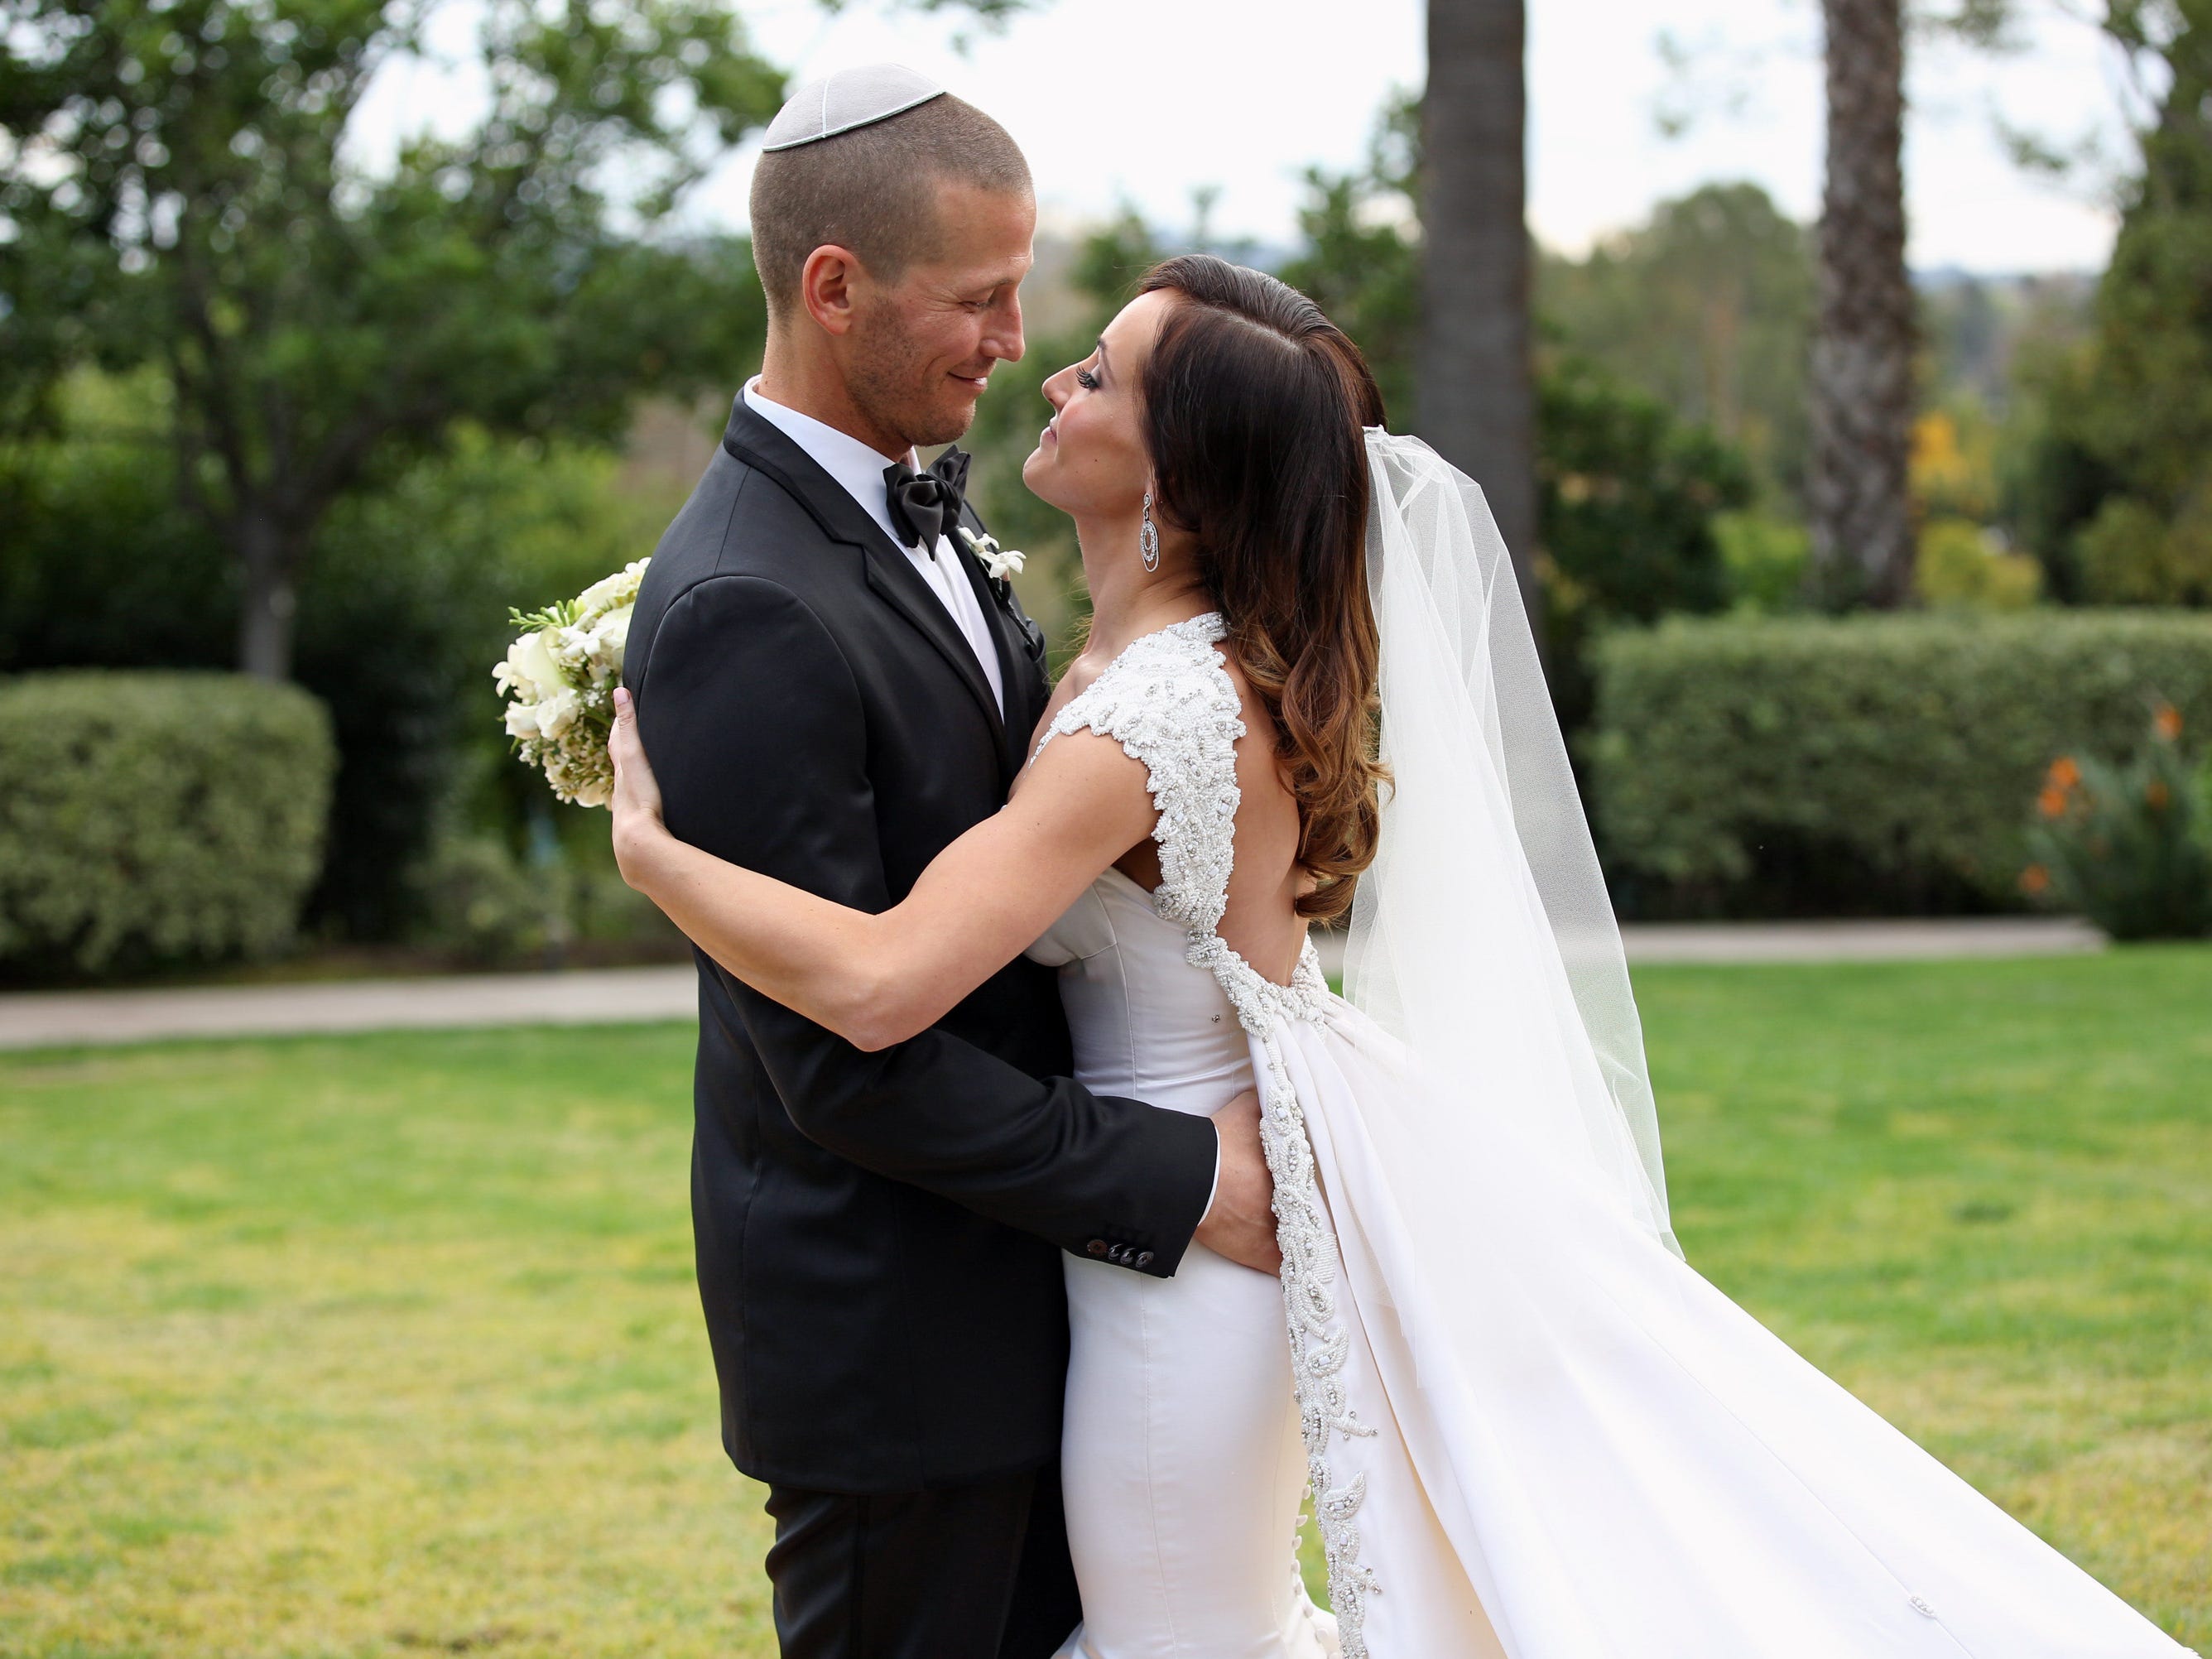 JP Rosenbaum umarmt Ashley Hebert in einem weißen rückenfreien Hochzeitskleid und Schleier an ihrem Hochzeitstag im Jahr 2012 in einem Smoking und einer weißen Yarmulke.